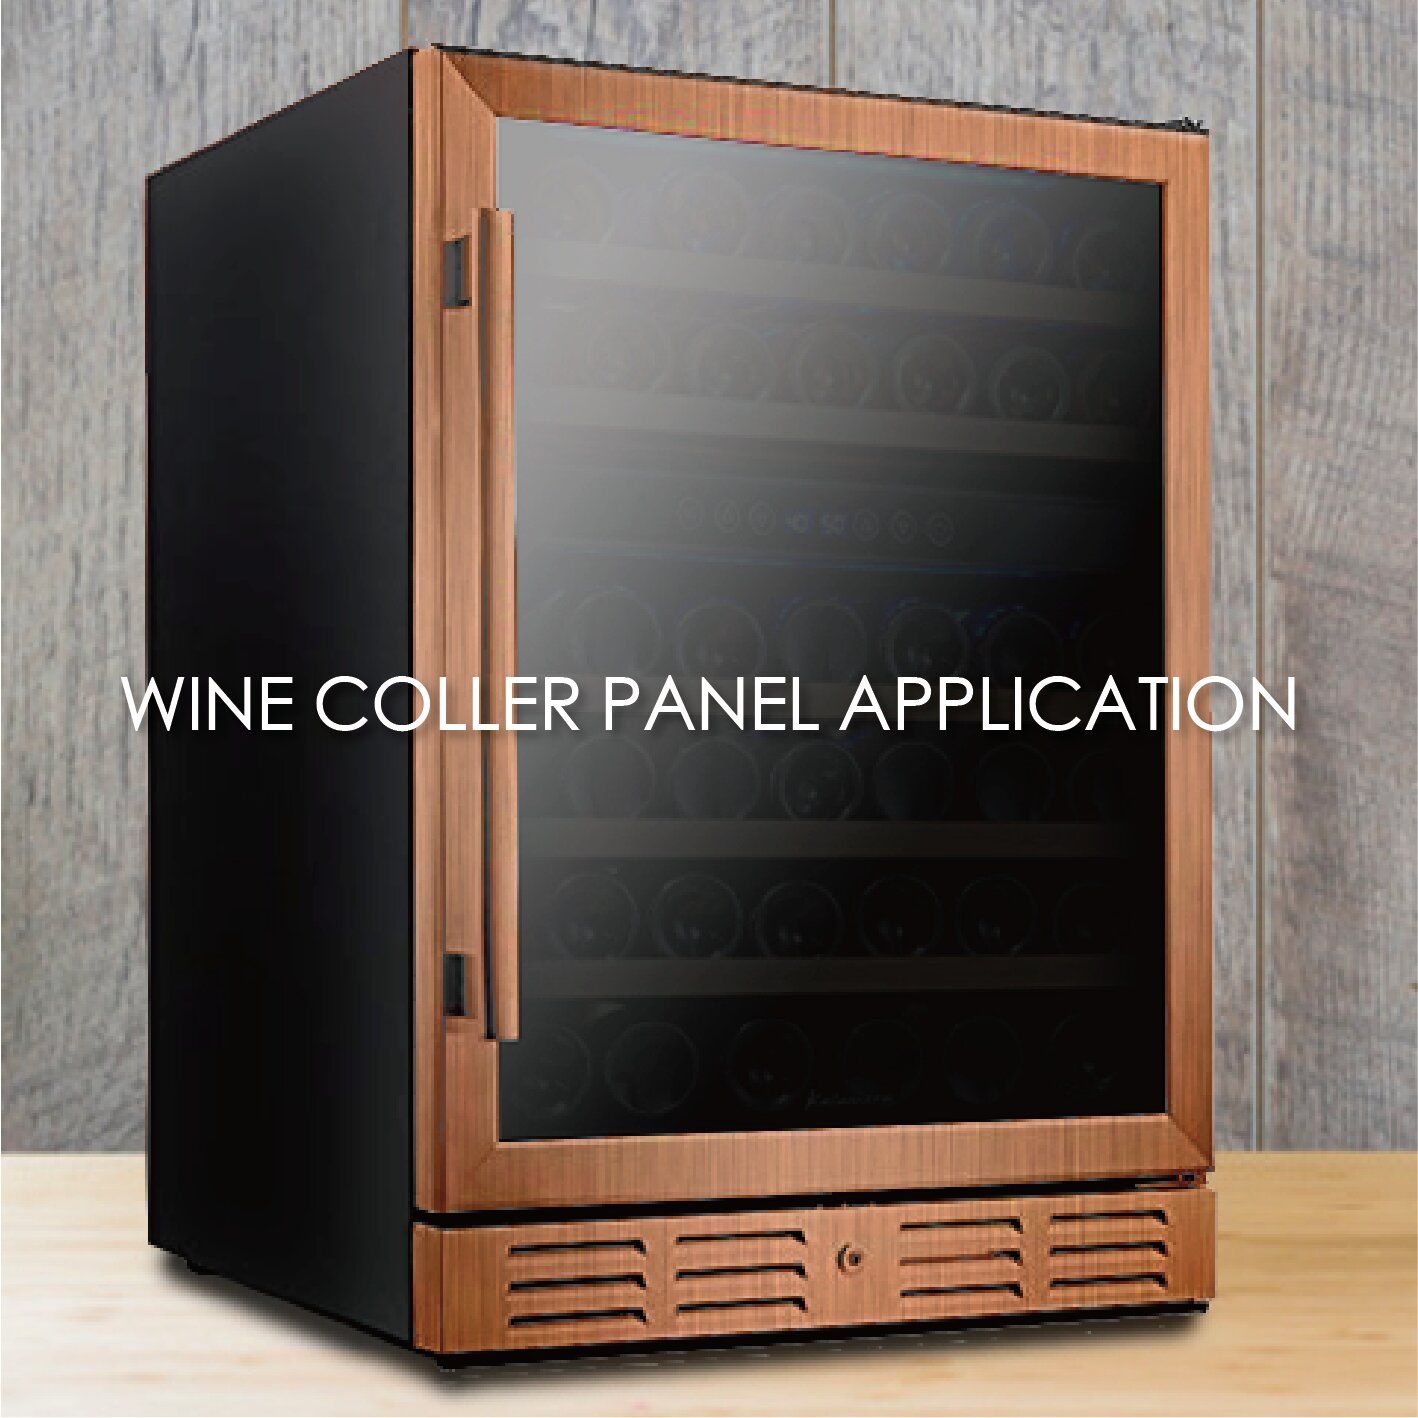 L'utilisation de métal revêtu de grain de bois pour fabriquer des panneaux de refroidisseur à vin peut augmenter l'esthétique et la durabilité